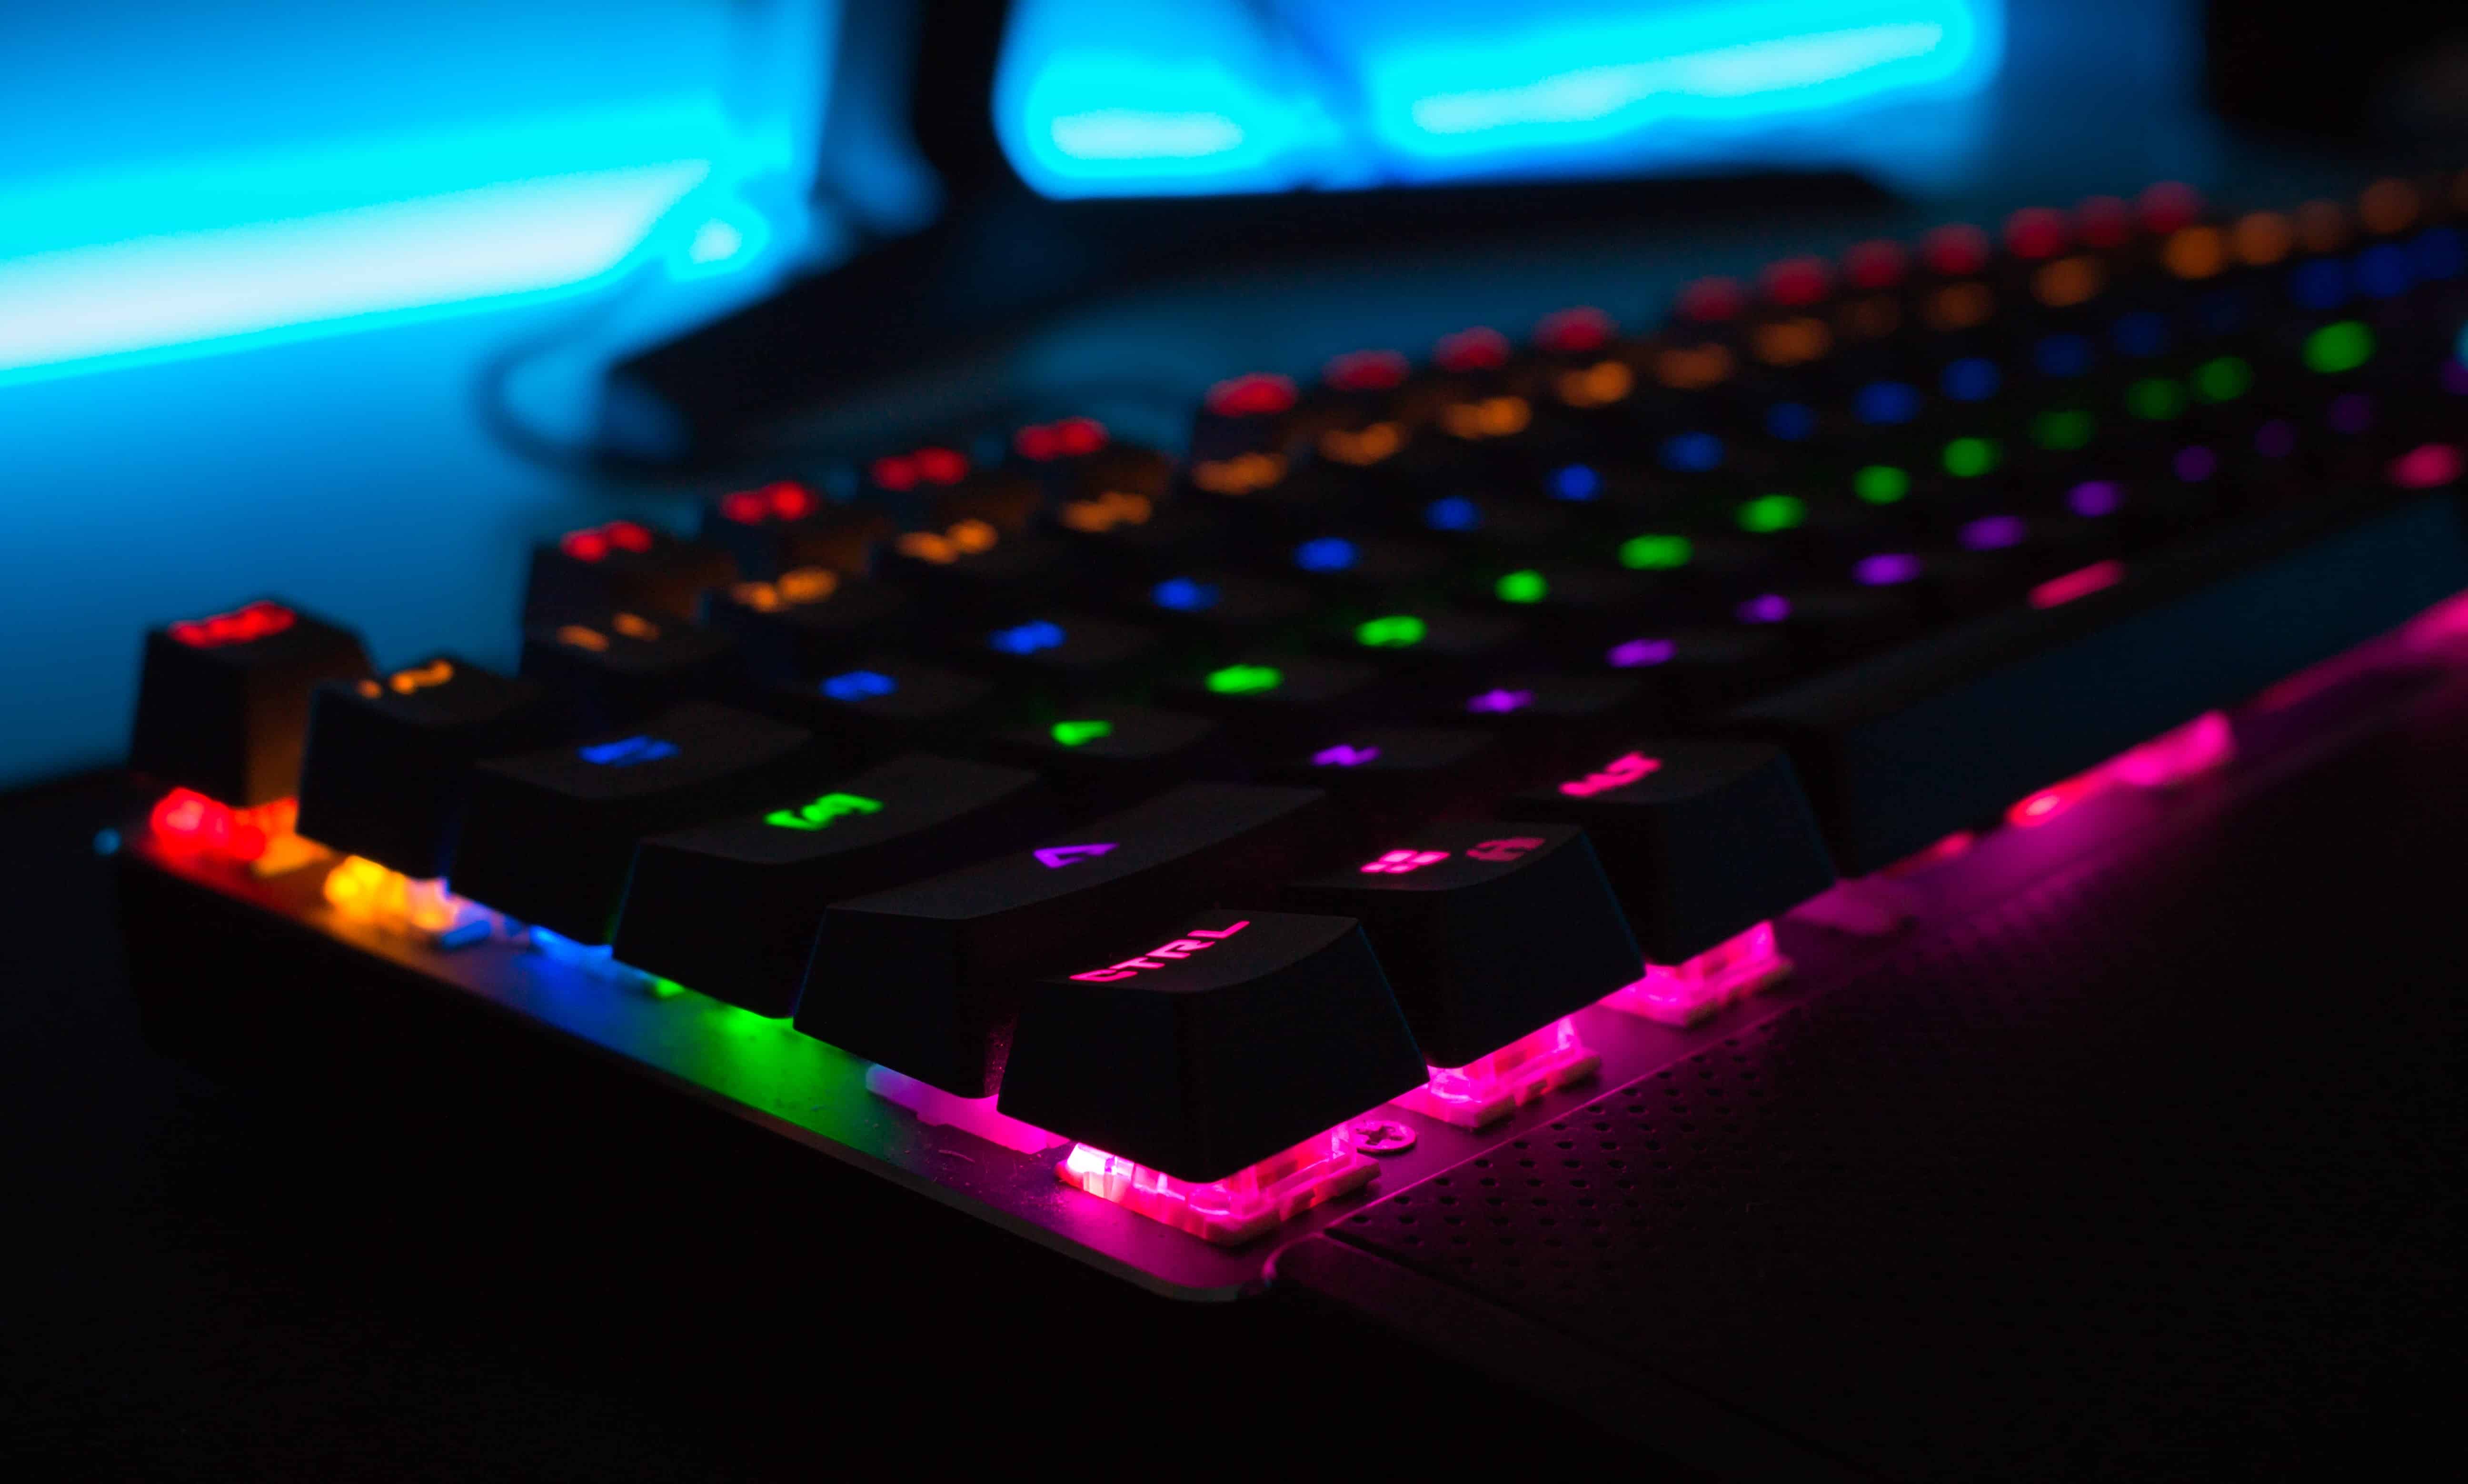 Keyboard, PC, Gaming